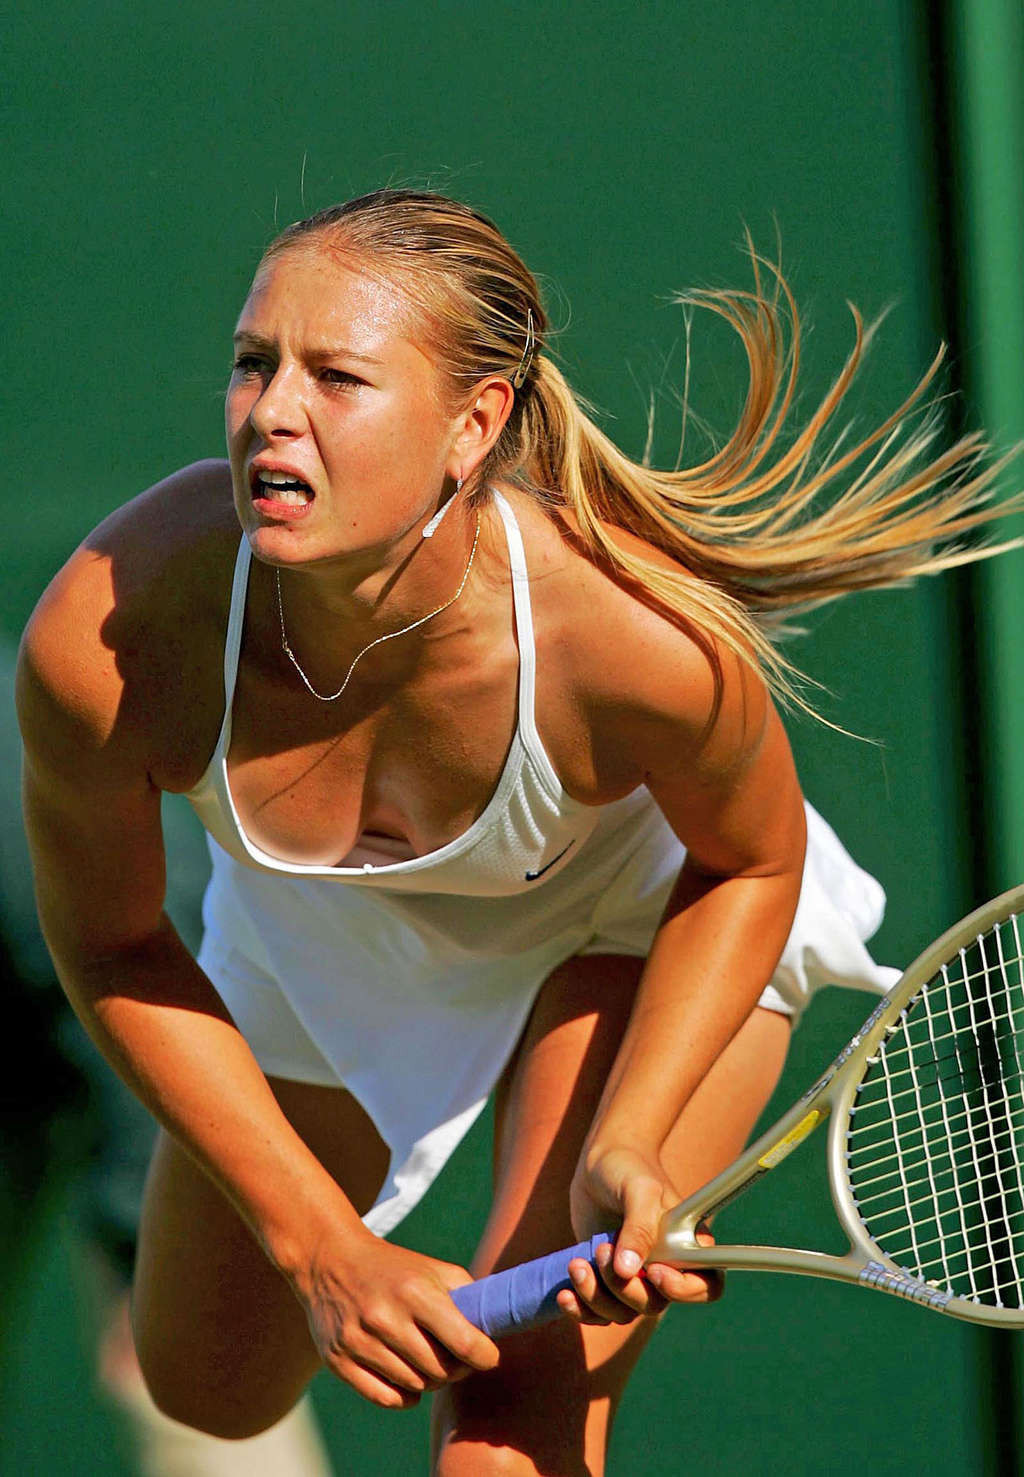 マリア・シャラポワがテニス中に乳首を出しているところをパパラッチされる
 #75346458